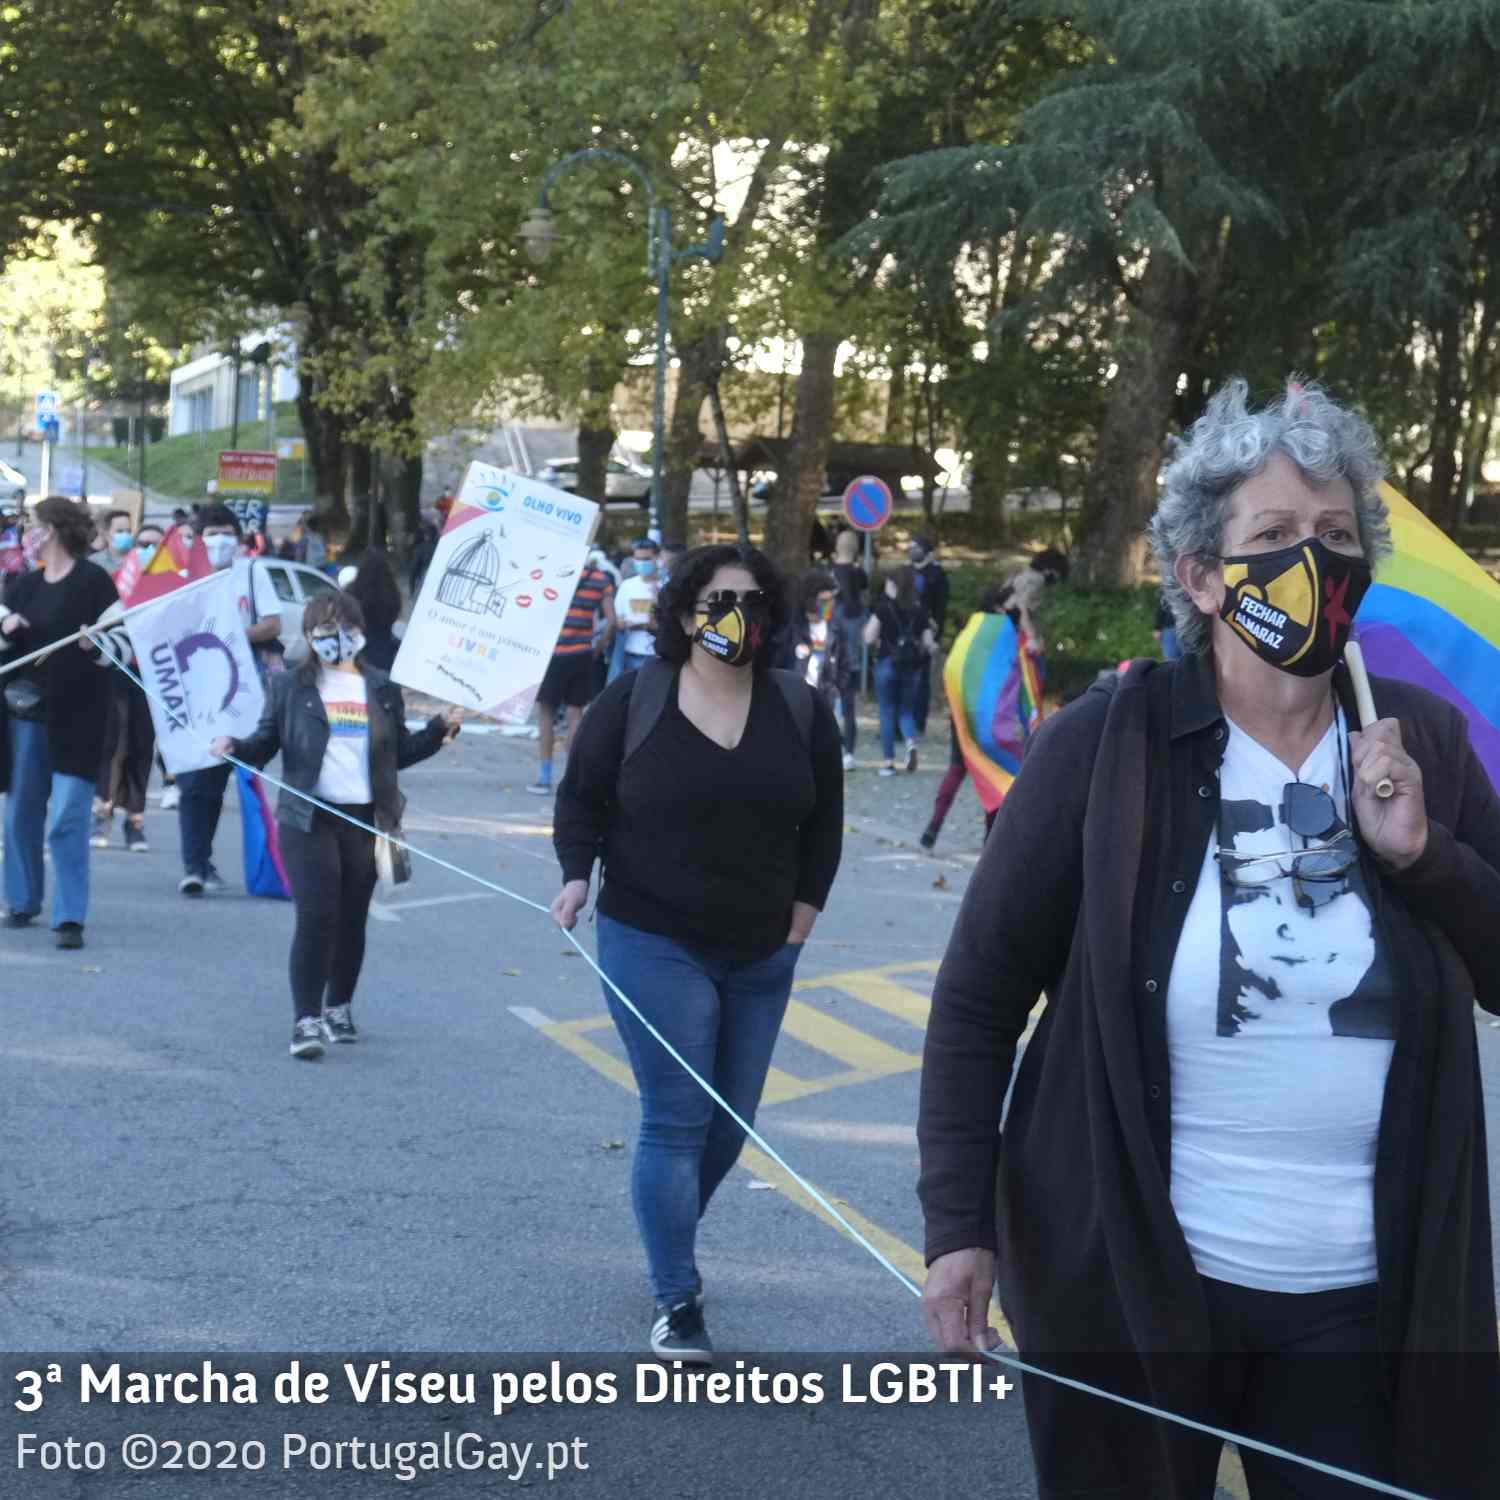 PORTUGAL: 3 Marcha Pelos Direitos LGBTI+ de Viseu